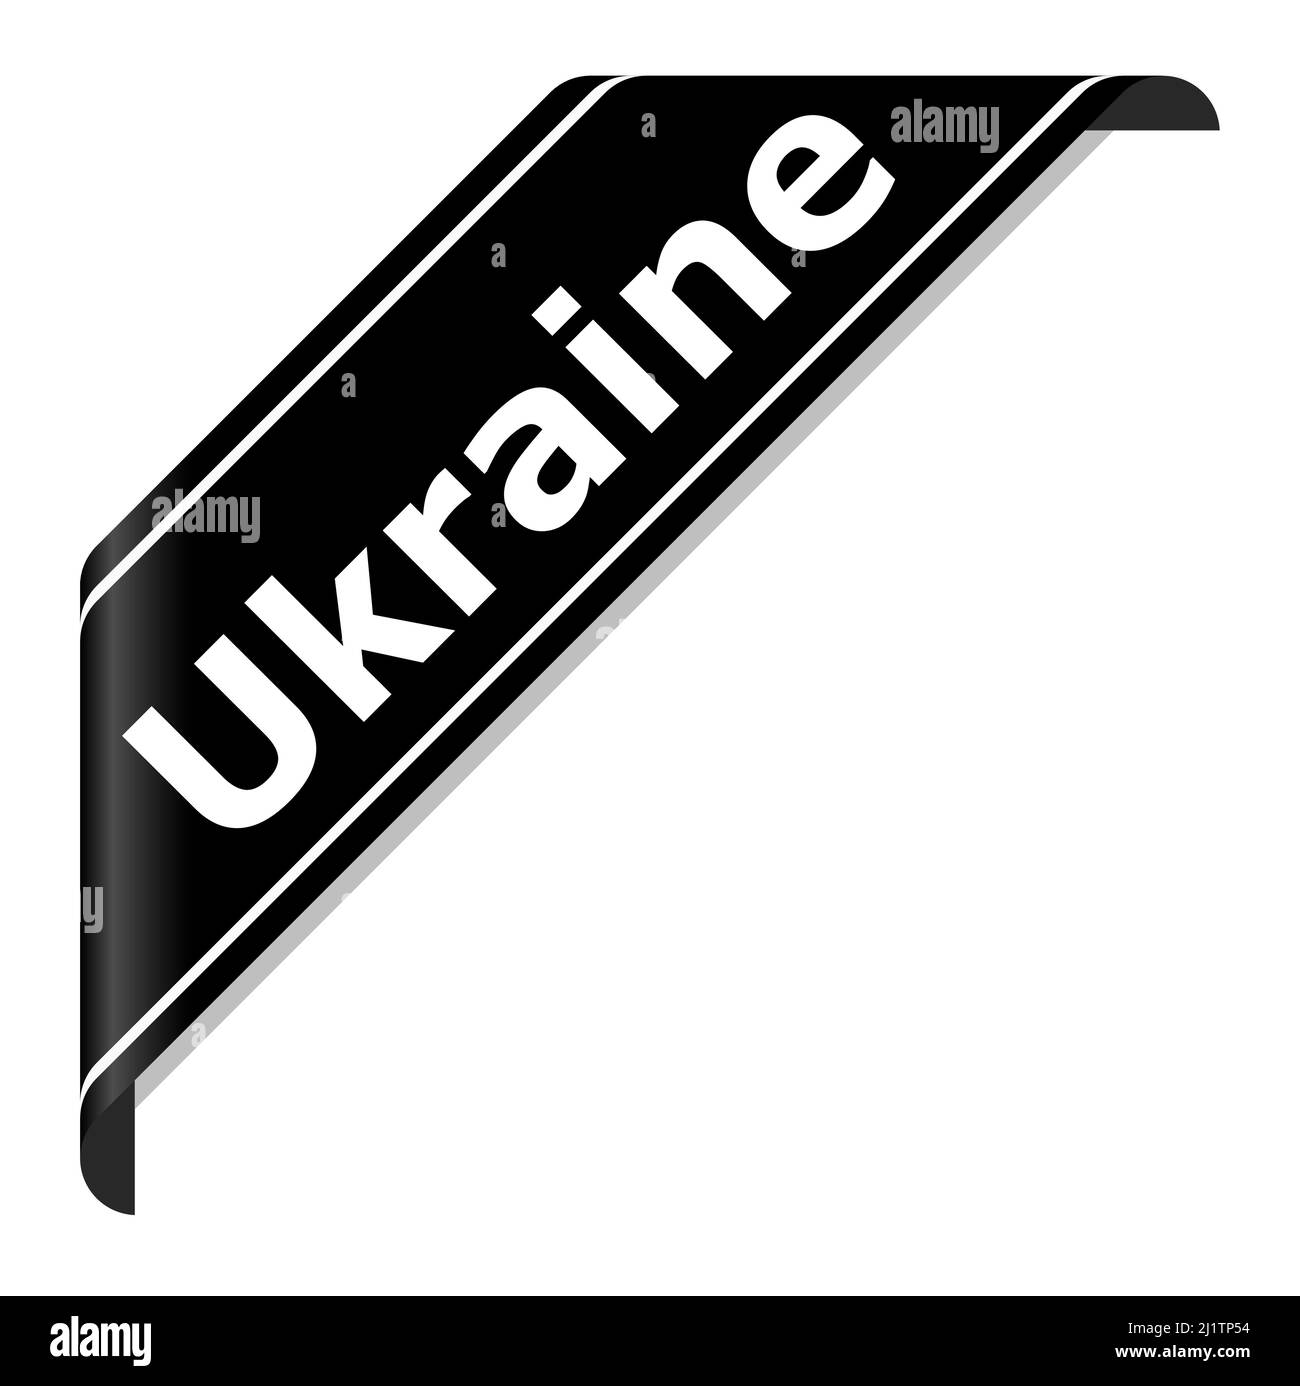 eps-Vektor-Illustration eines schwarzen Trauerbanners mit Text ukraine - STOP WAR - Konflikt mit russland 2022 Stock Vektor